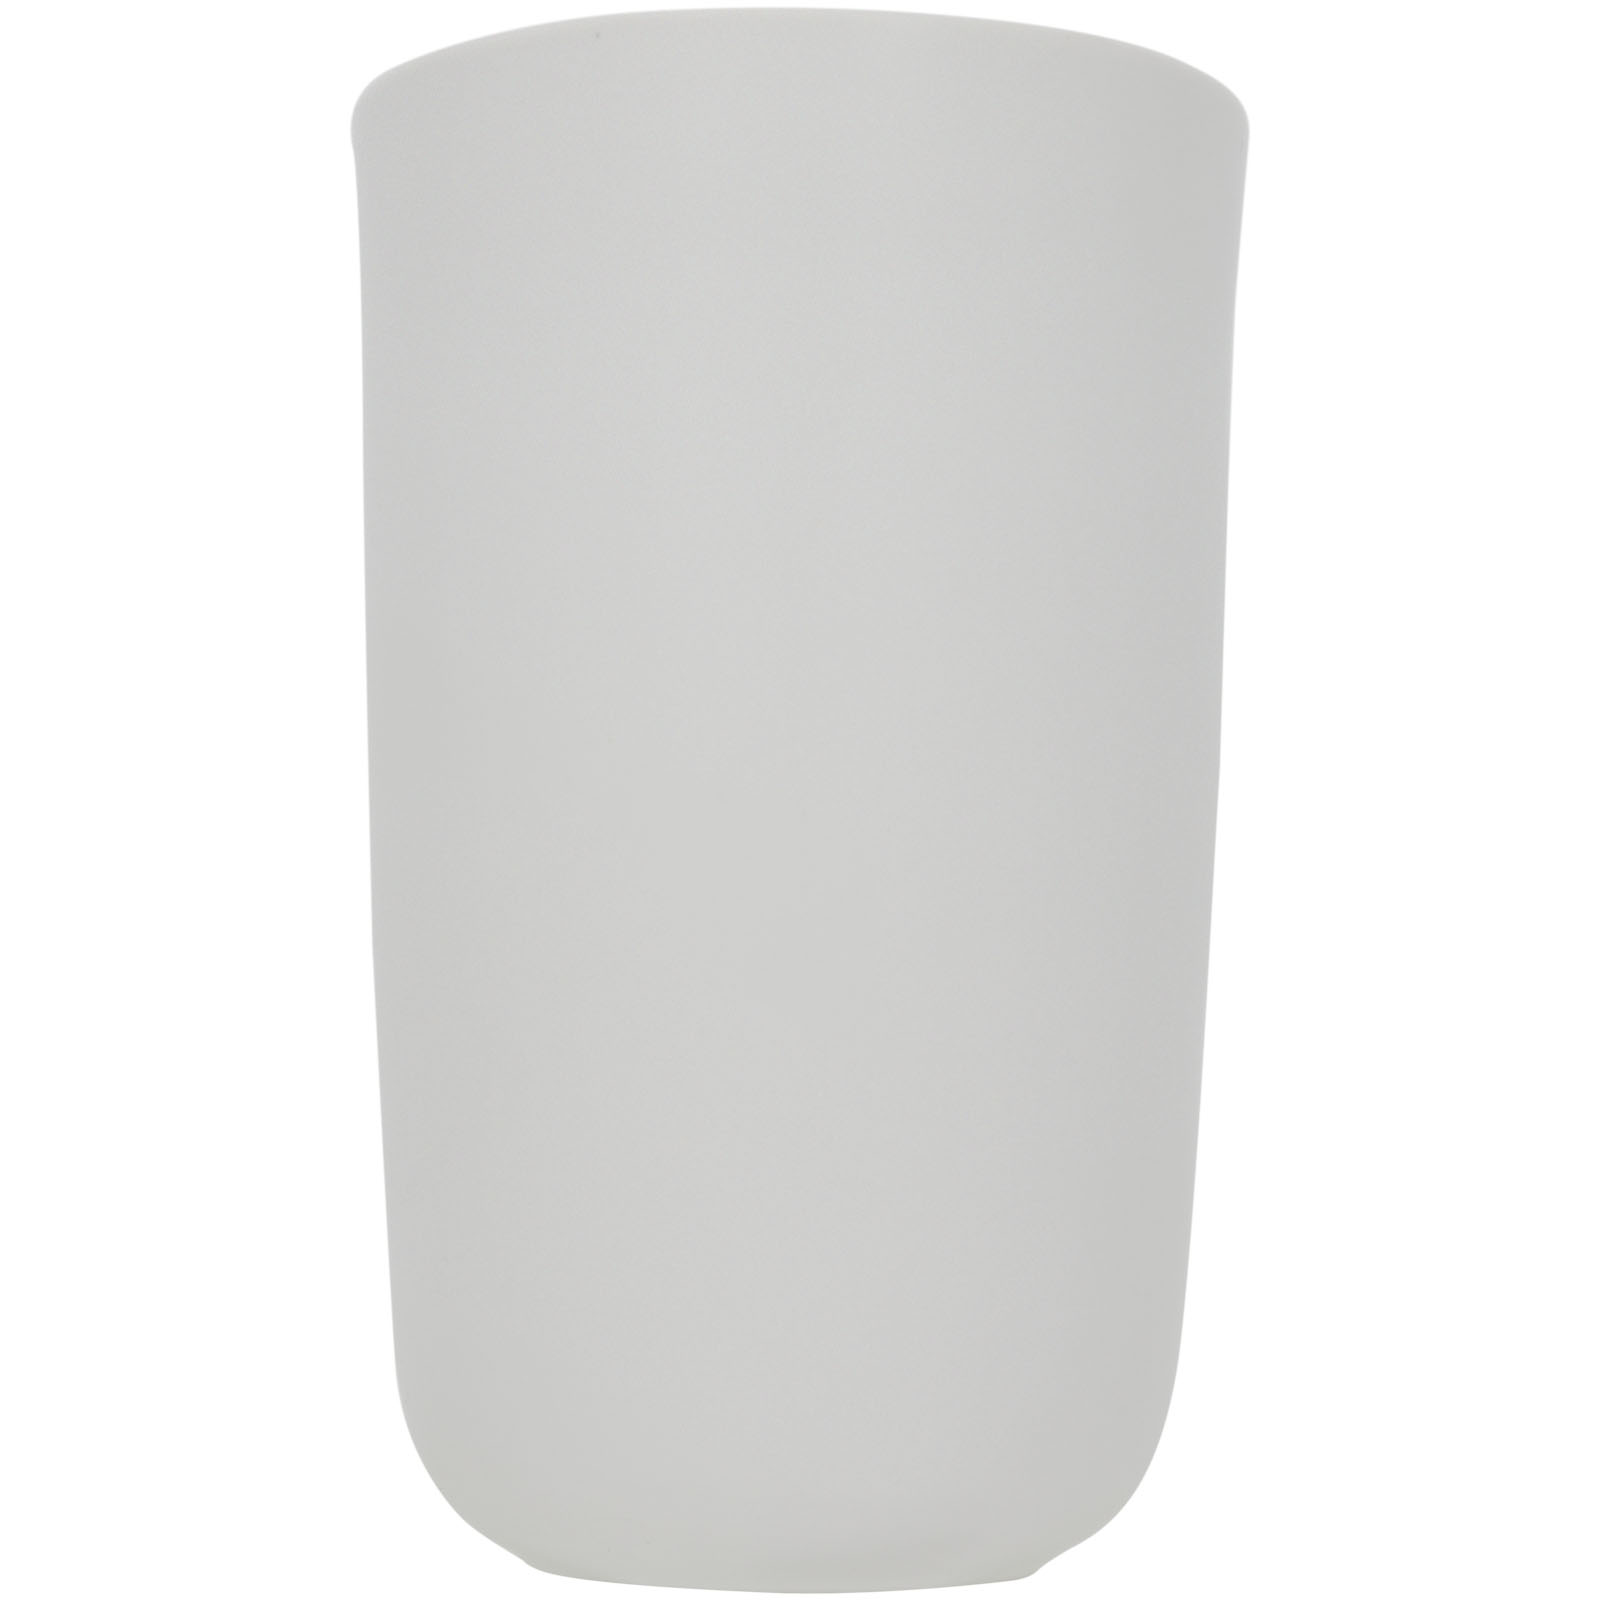 Advertising Travel mugs - Mysa 410 ml double-walled ceramic tumbler - 2